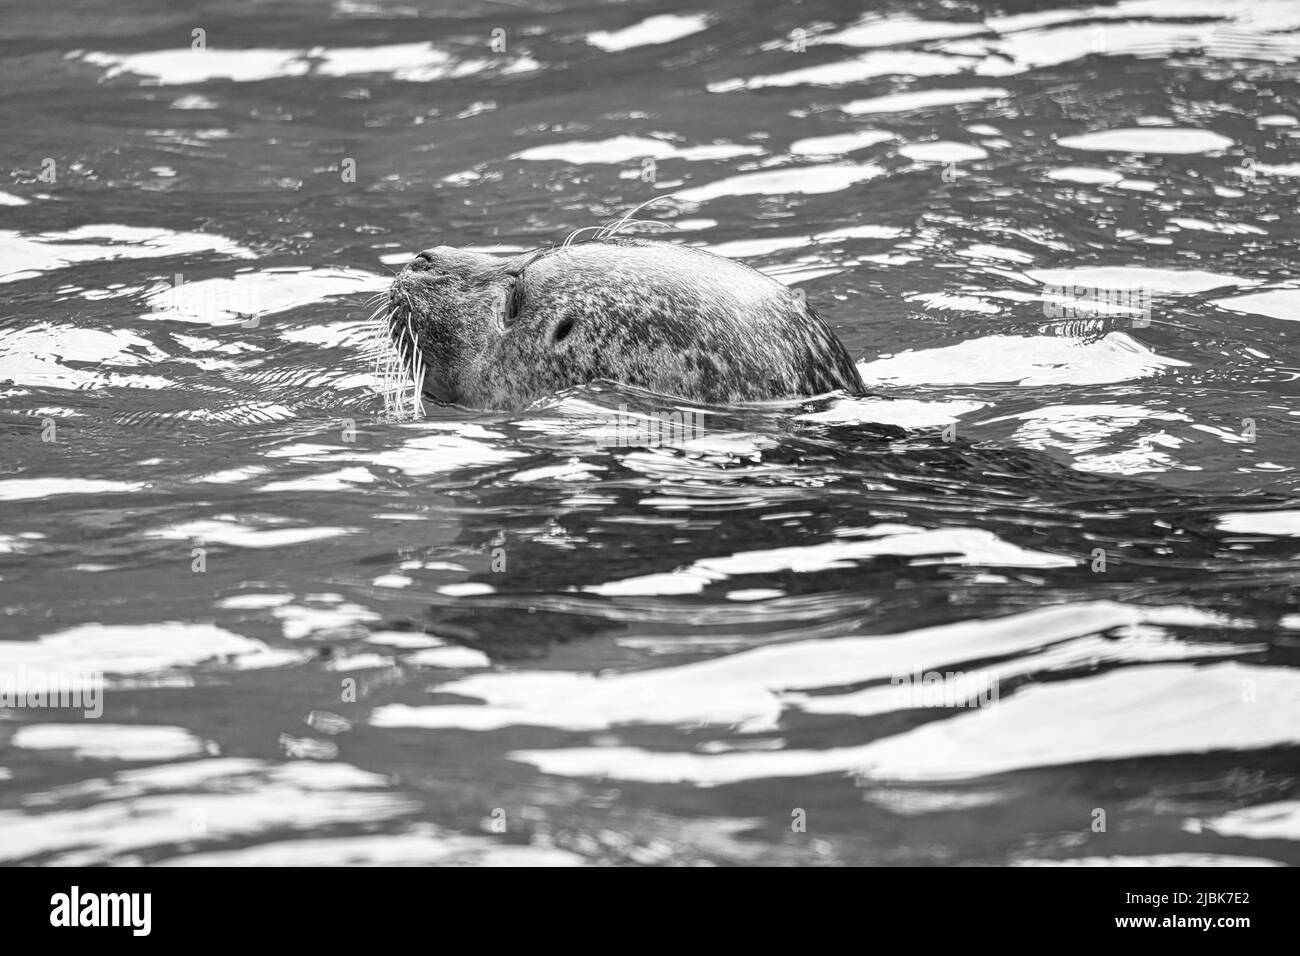 Robbe in schwarz und weiß, schwimmend im Wasser. Nahaufnahme des Säugetiers. Gefährdete Arten in Deutschland. Tierfoto Stockfoto